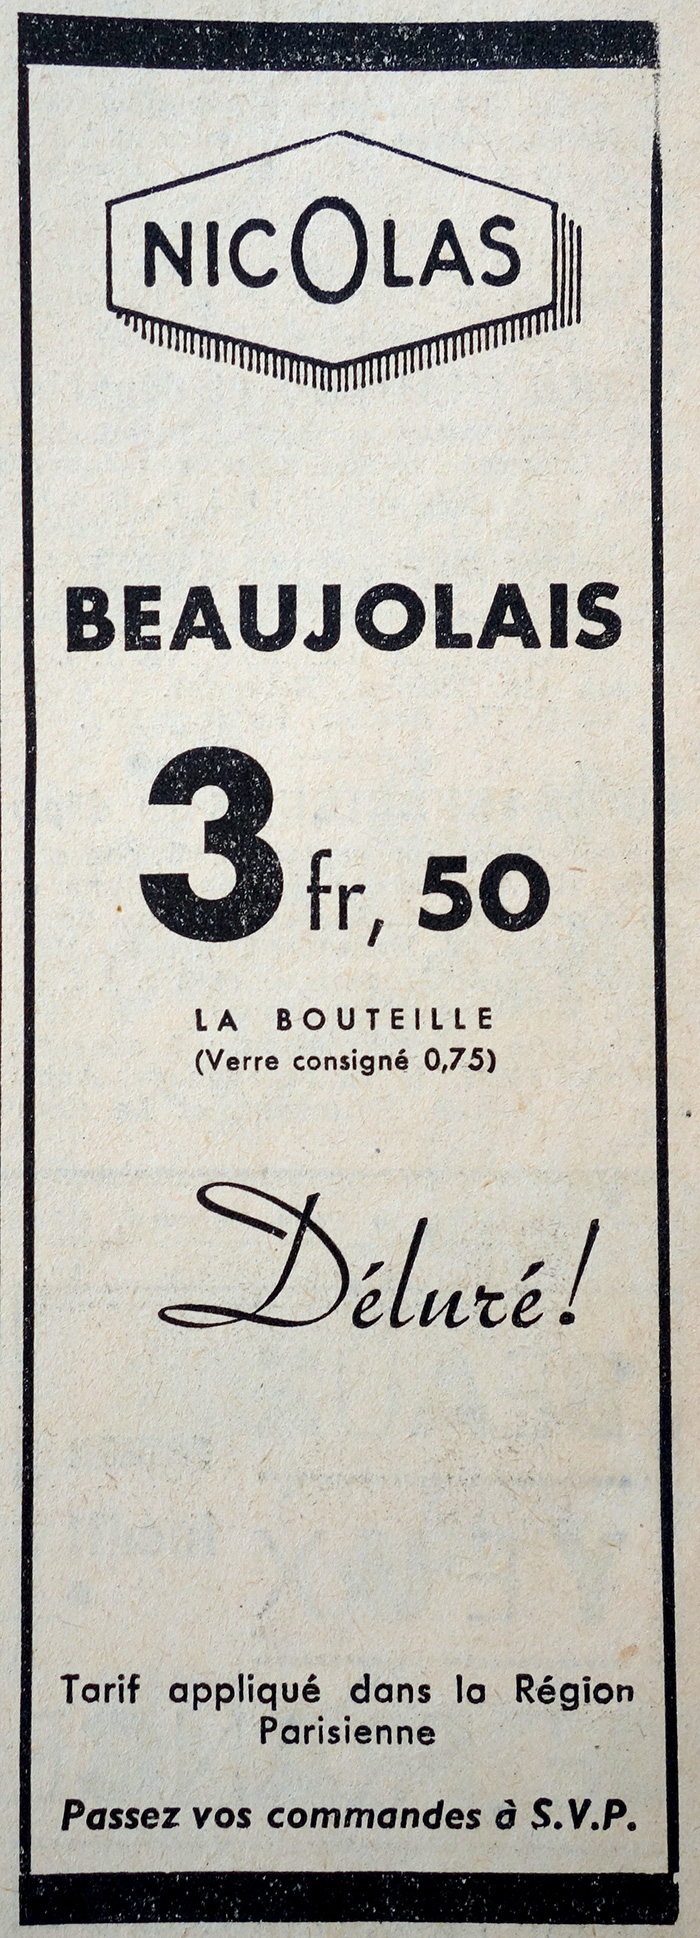 nicolas-vins-publicite-journal-le-petit-parisien-19366-site-photogriffon.jpg